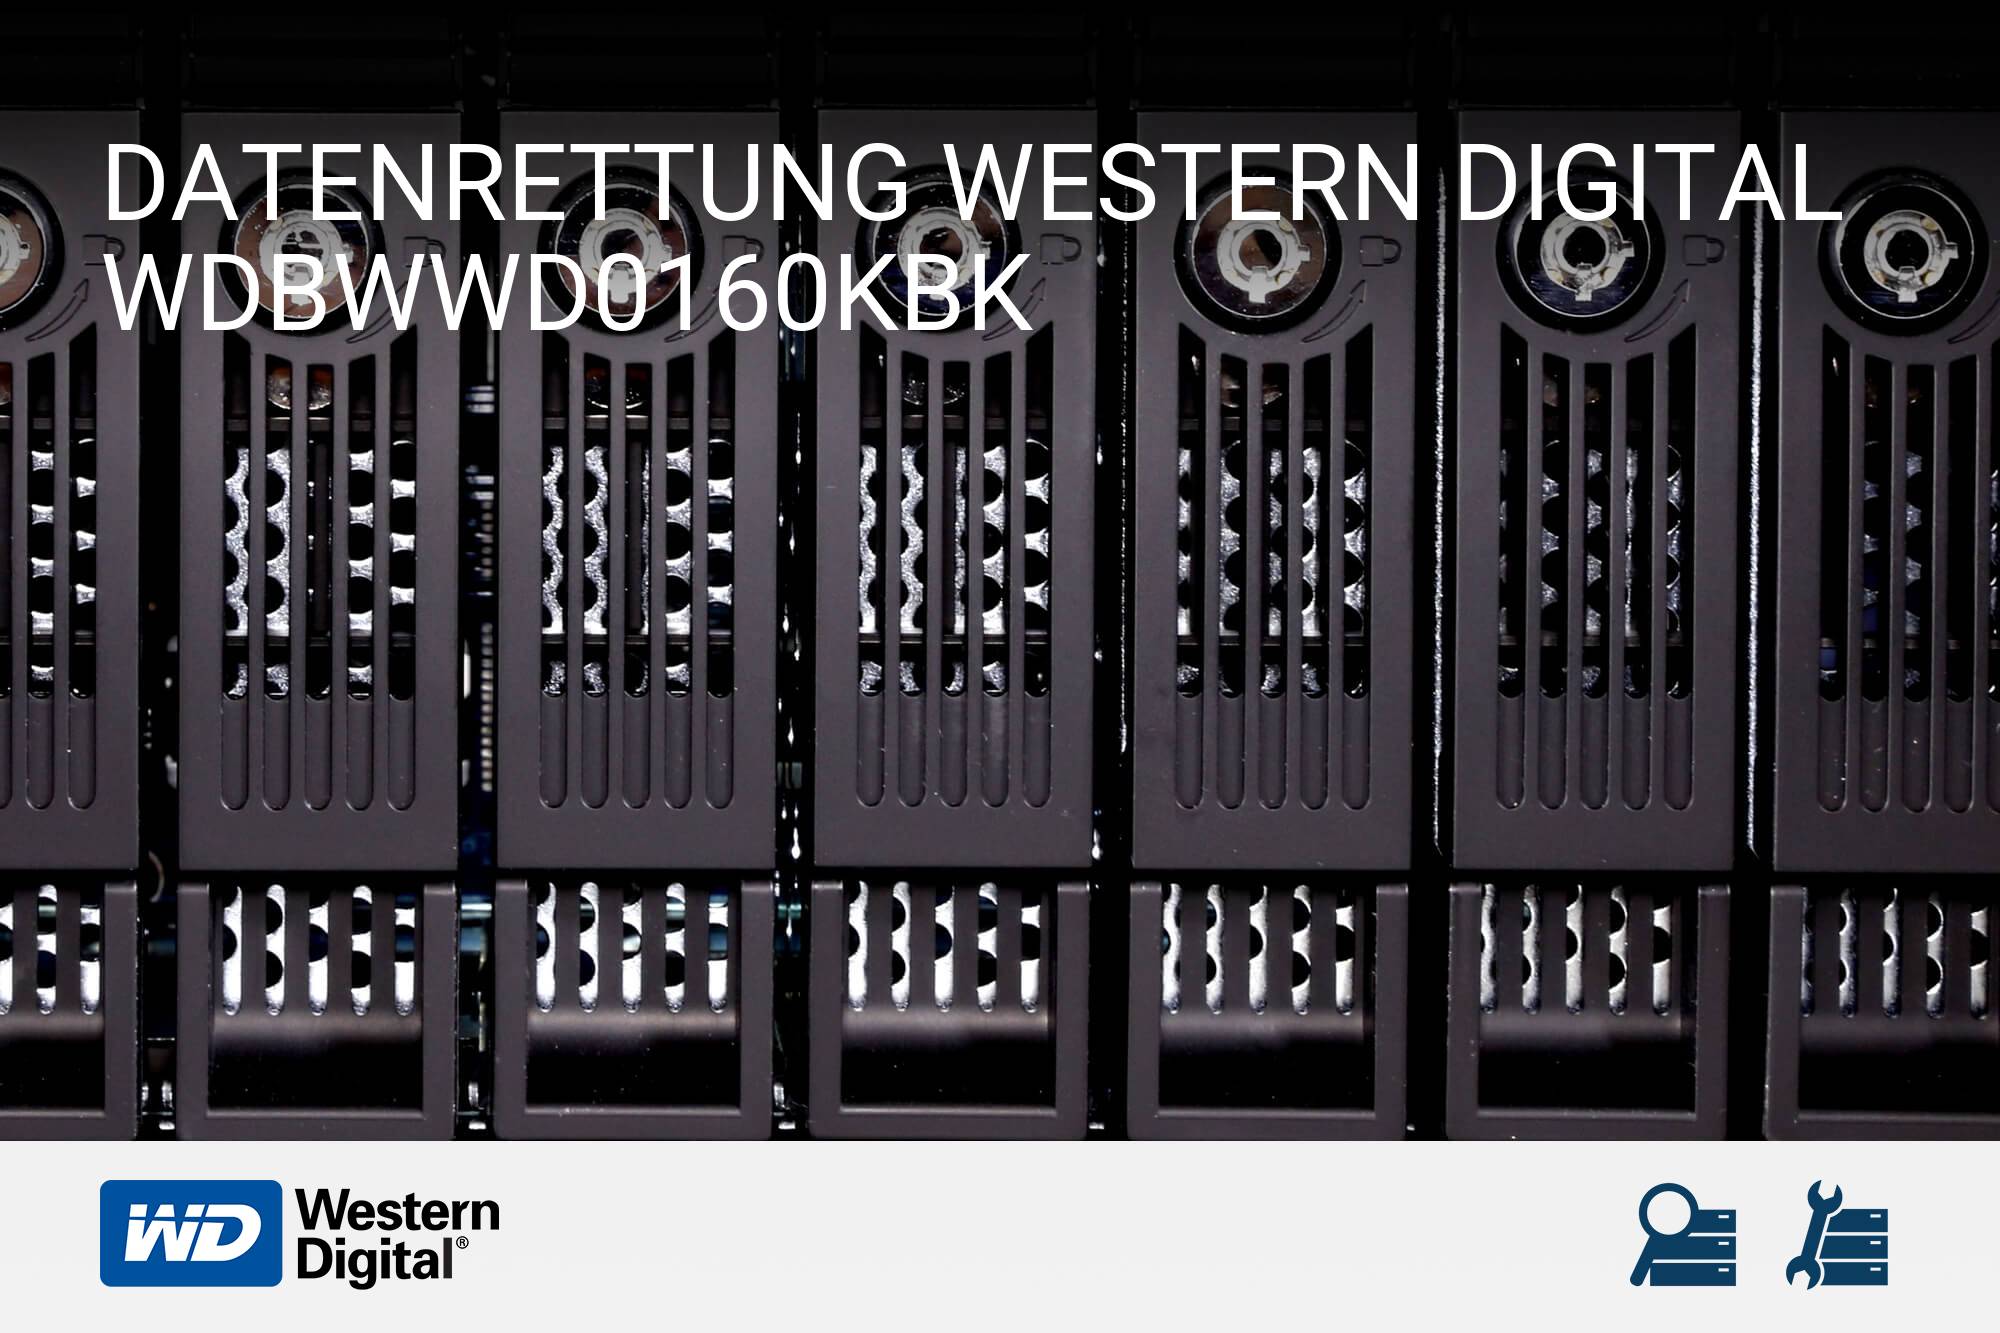 Western Digital WDBWWD0160KBK